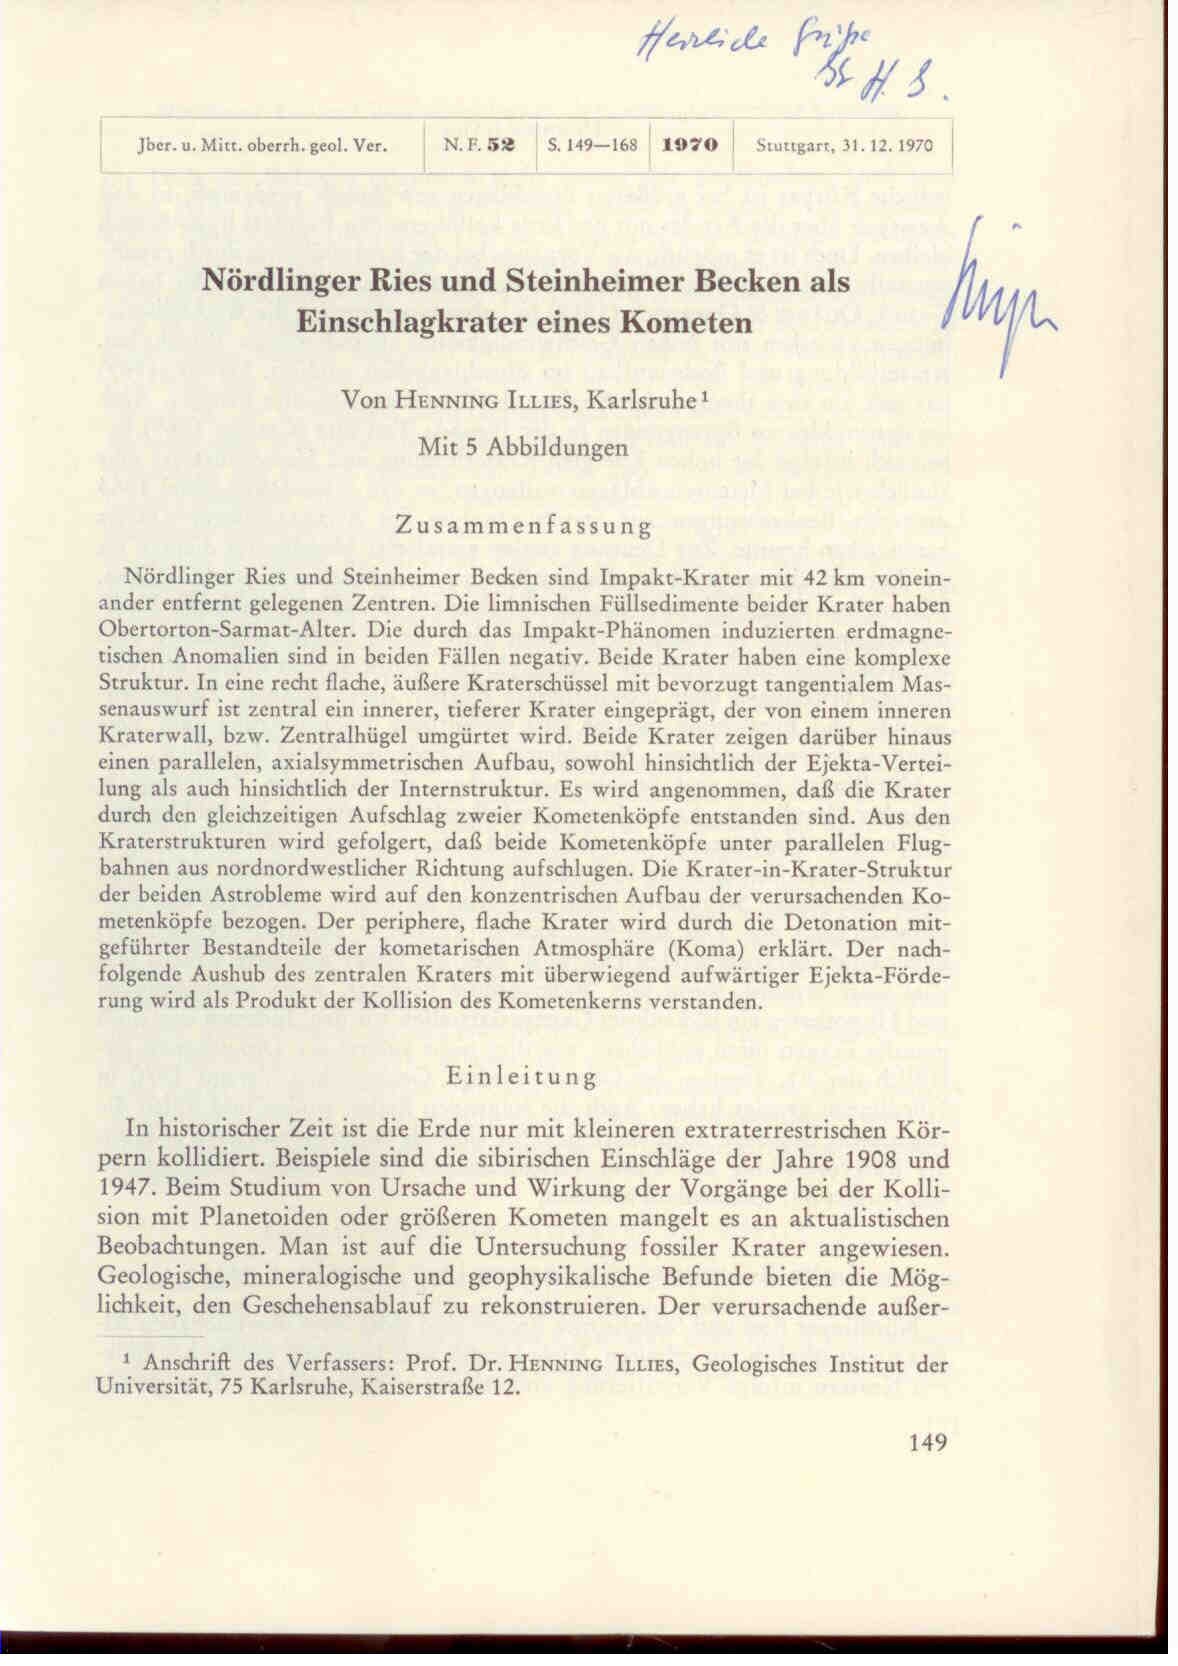 Illies, J. H.: Nördlinger Ries und Steinheimer Becken als Einschlagkrater eines Kometen. 